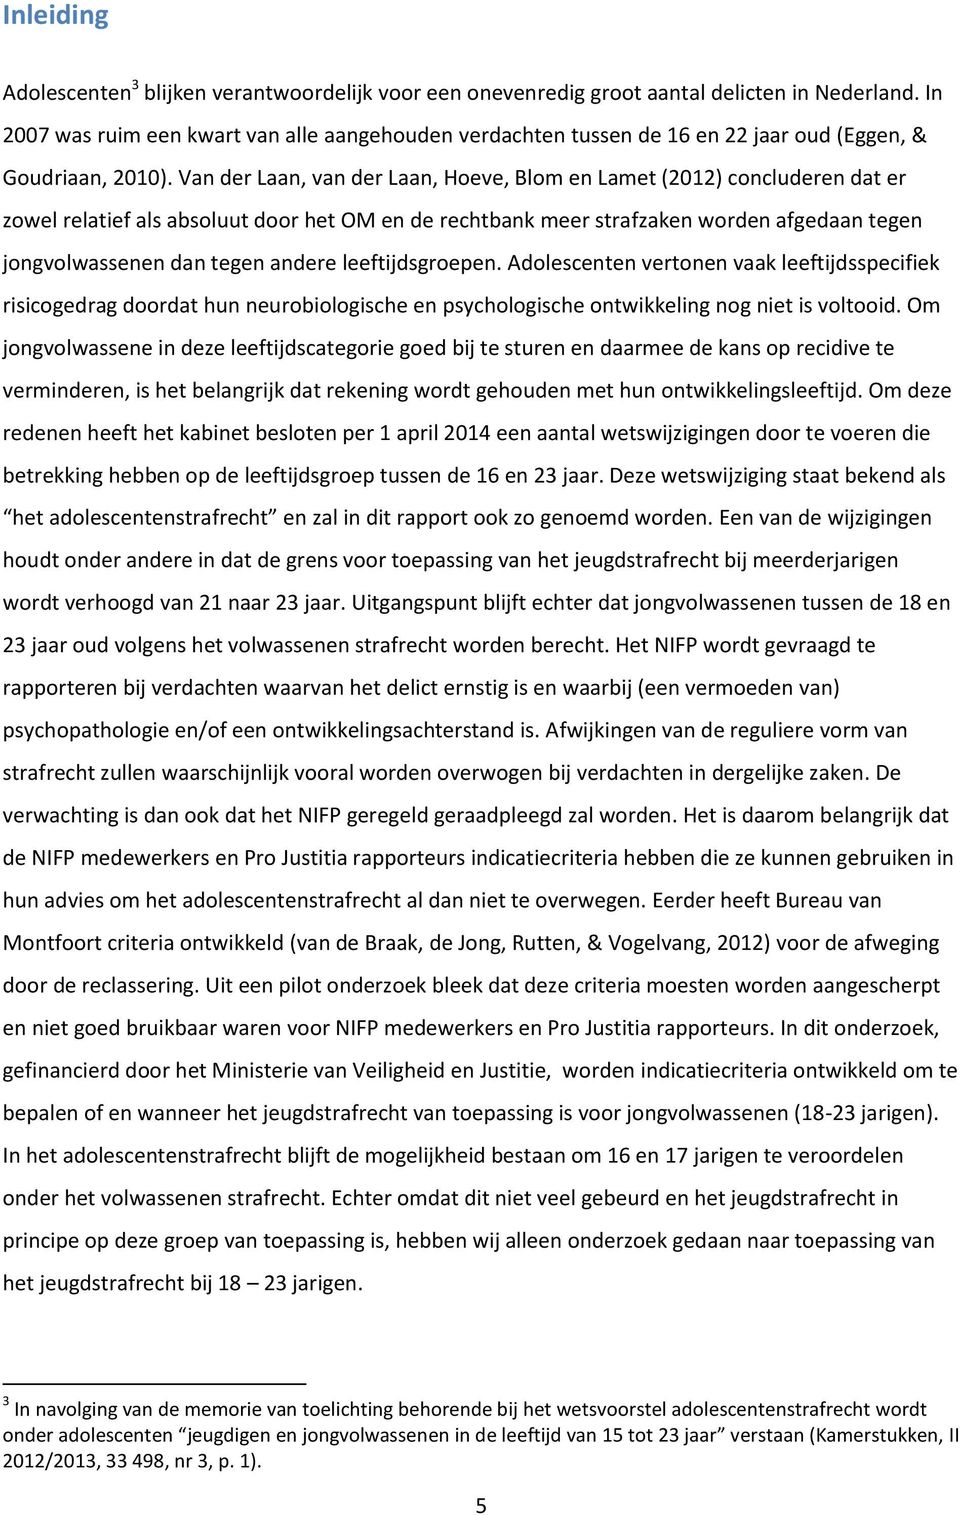 Van der Laan, van der Laan, Hoeve, Blom en Lamet (2012) concluderen dat er zowel relatief als absoluut door het OM en de rechtbank meer strafzaken worden afgedaan tegen jongvolwassenen dan tegen